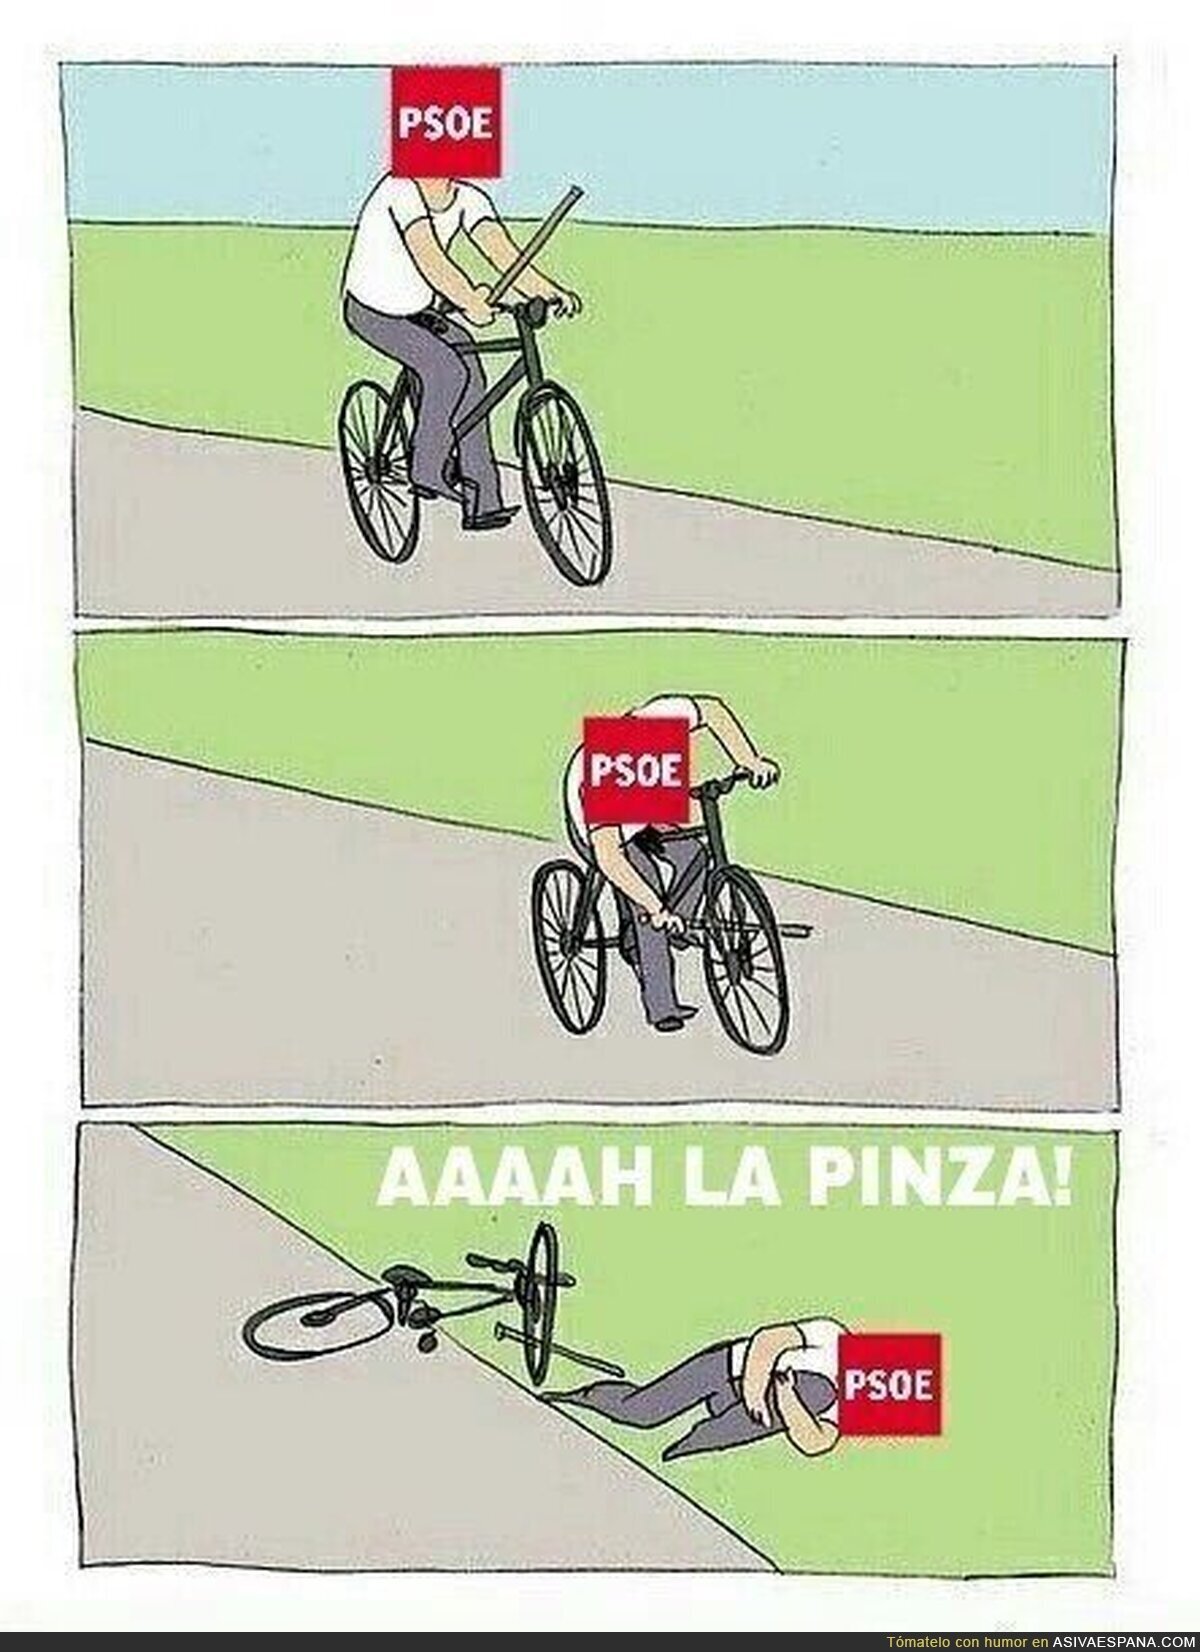 Mientras tanto, el PSOE...